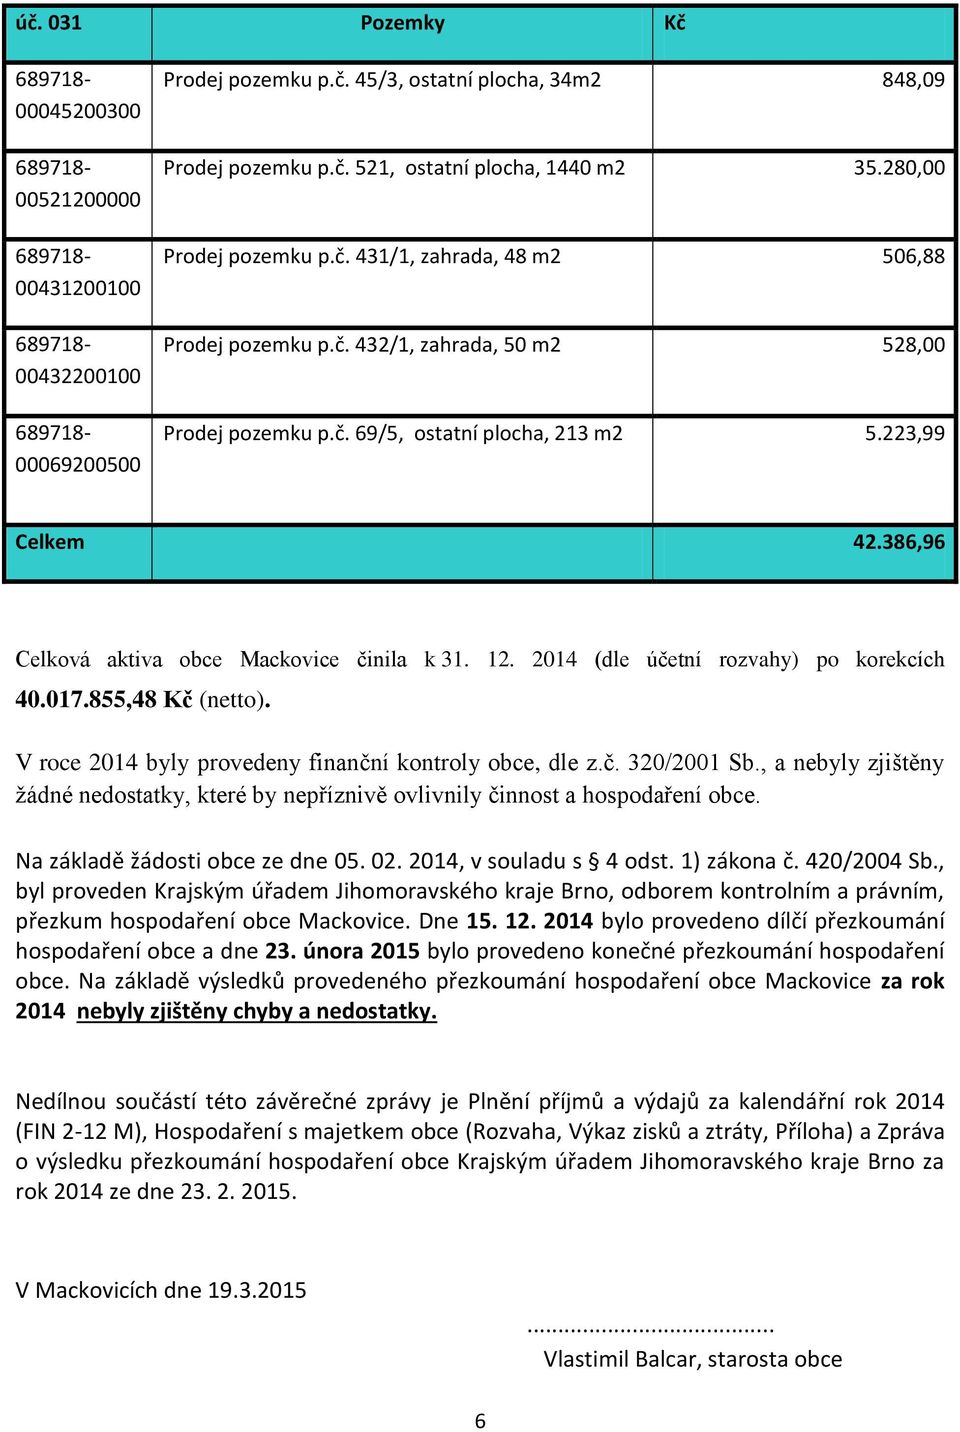 386,96 Celková aktiva obce Mackovice činila k 31. 12. 2014 (dle účetní rozvahy) po korekcích 40.017.855,48 Kč (netto). V roce 2014 byly provedeny finanční kontroly obce, dle z.č. 320/2001 Sb.